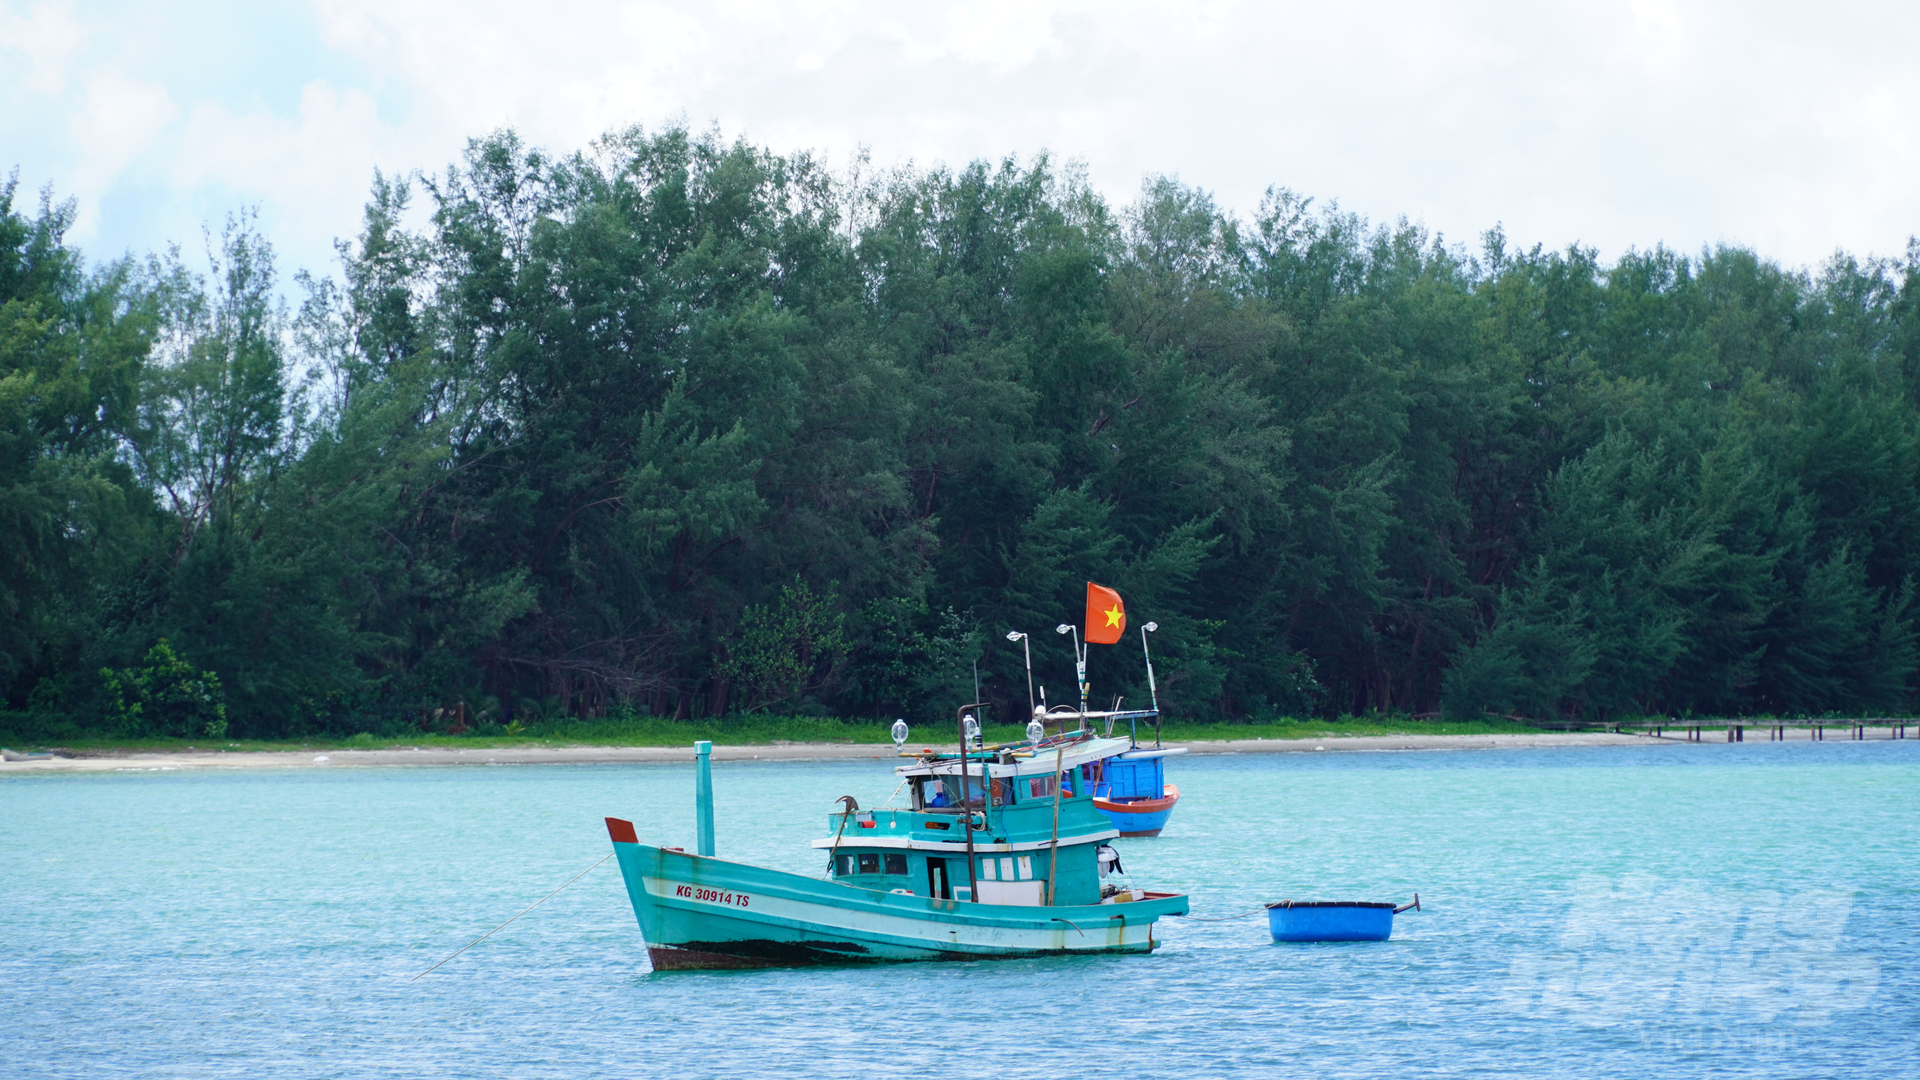 Tỉnh Trà Vinh hiện có 880 tàu cá đang hoạt động, chưa có trường hợp nào vi phạm (IUU) tại vùng biển nước ngoài. Ảnh: Hồ Thảo.